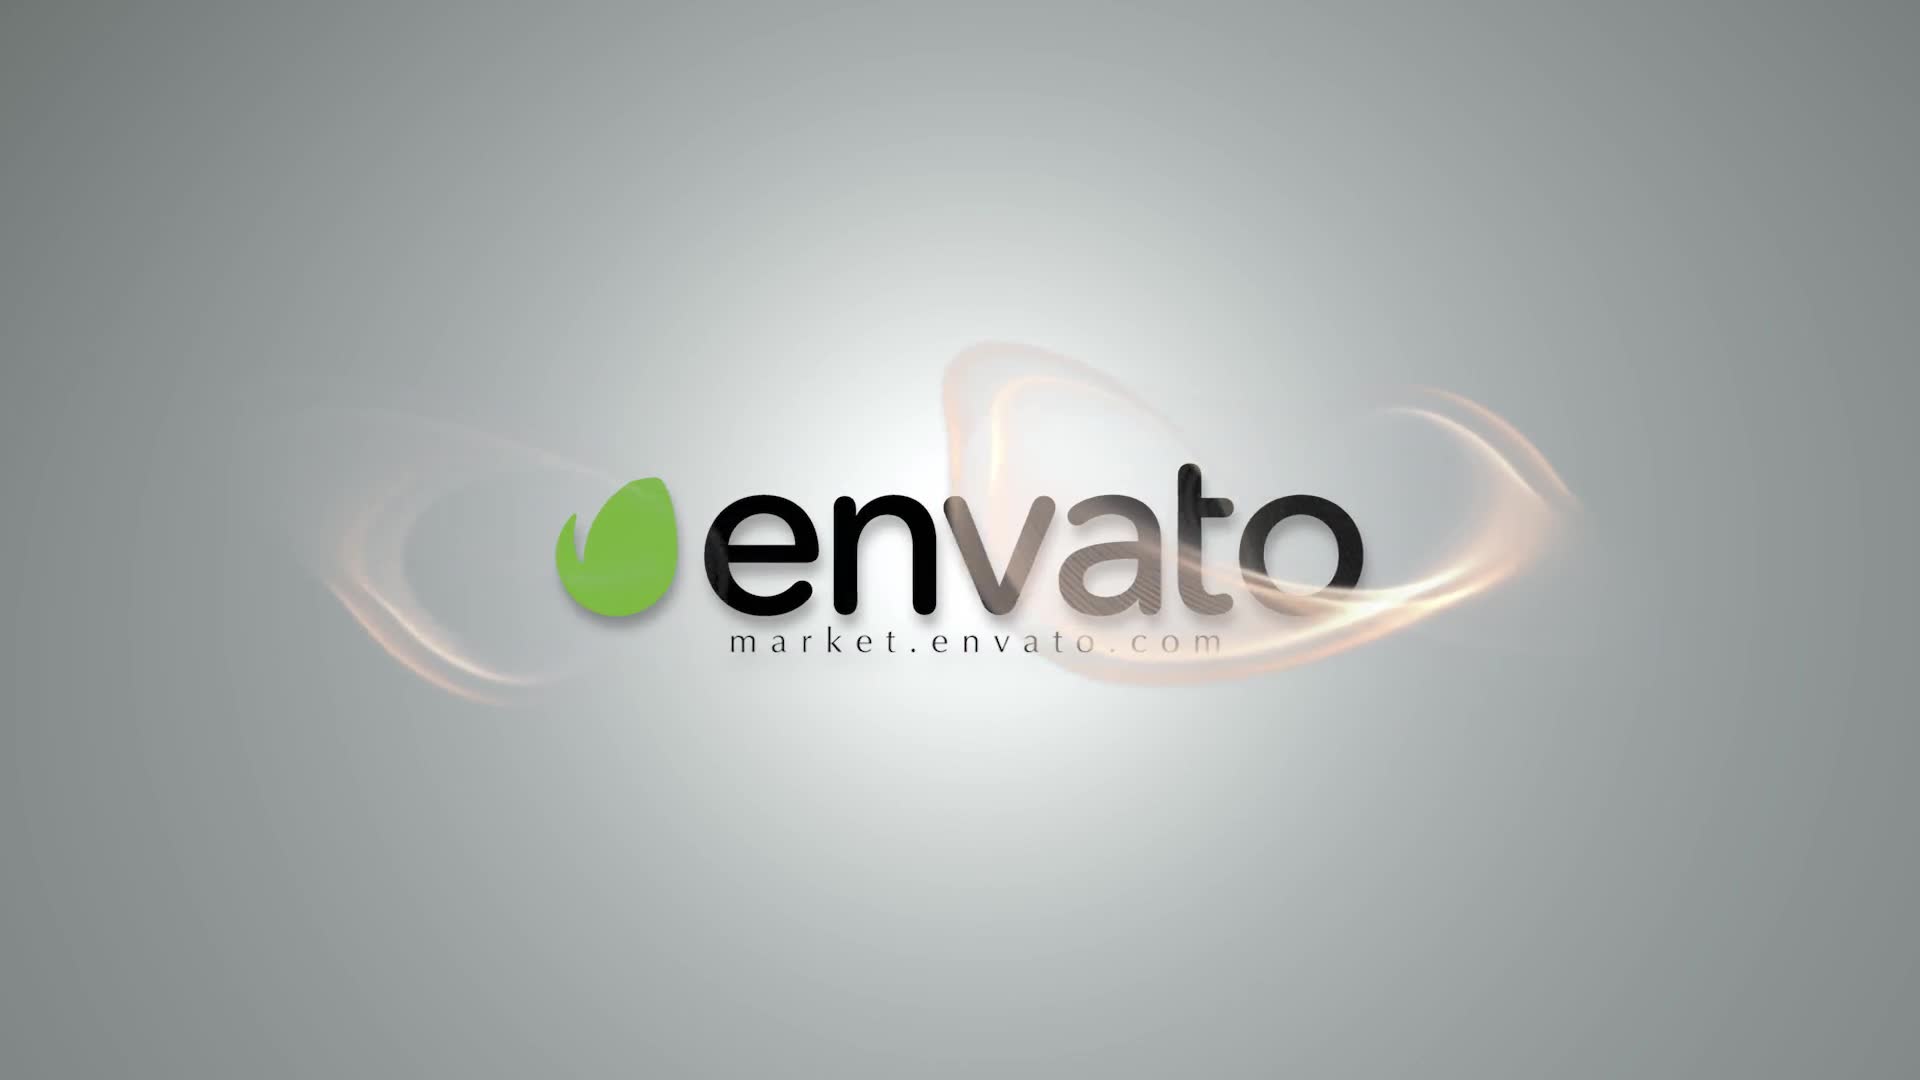 Elegant Corporate Logo Premiere Pro - Download Videohive 22976124